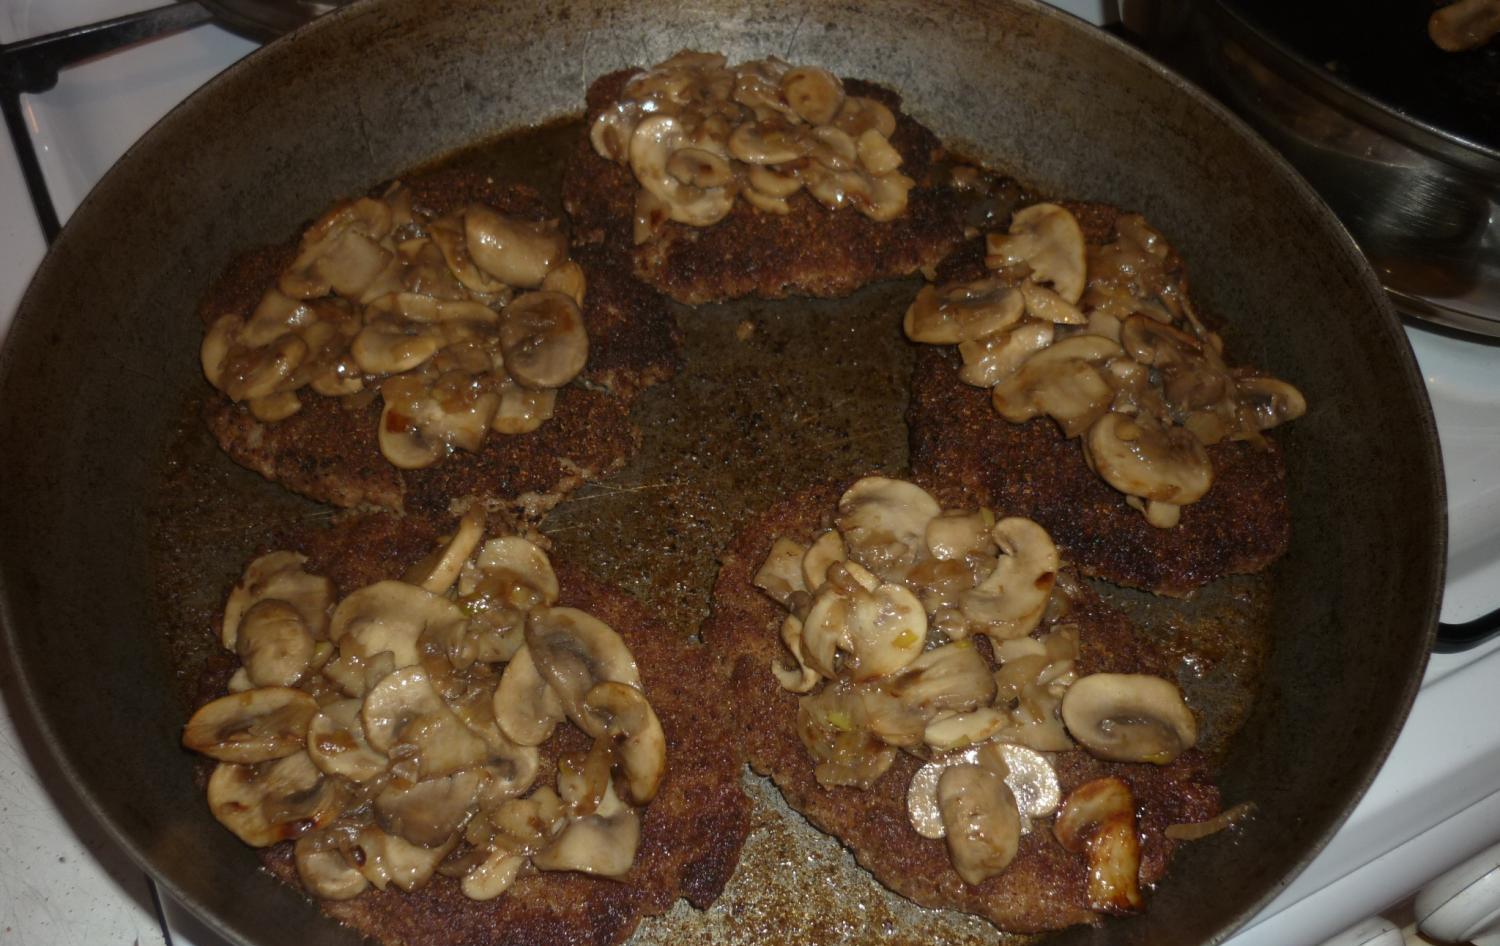 котлеты в сковороде, сверху на них лежат обжаренные грибы